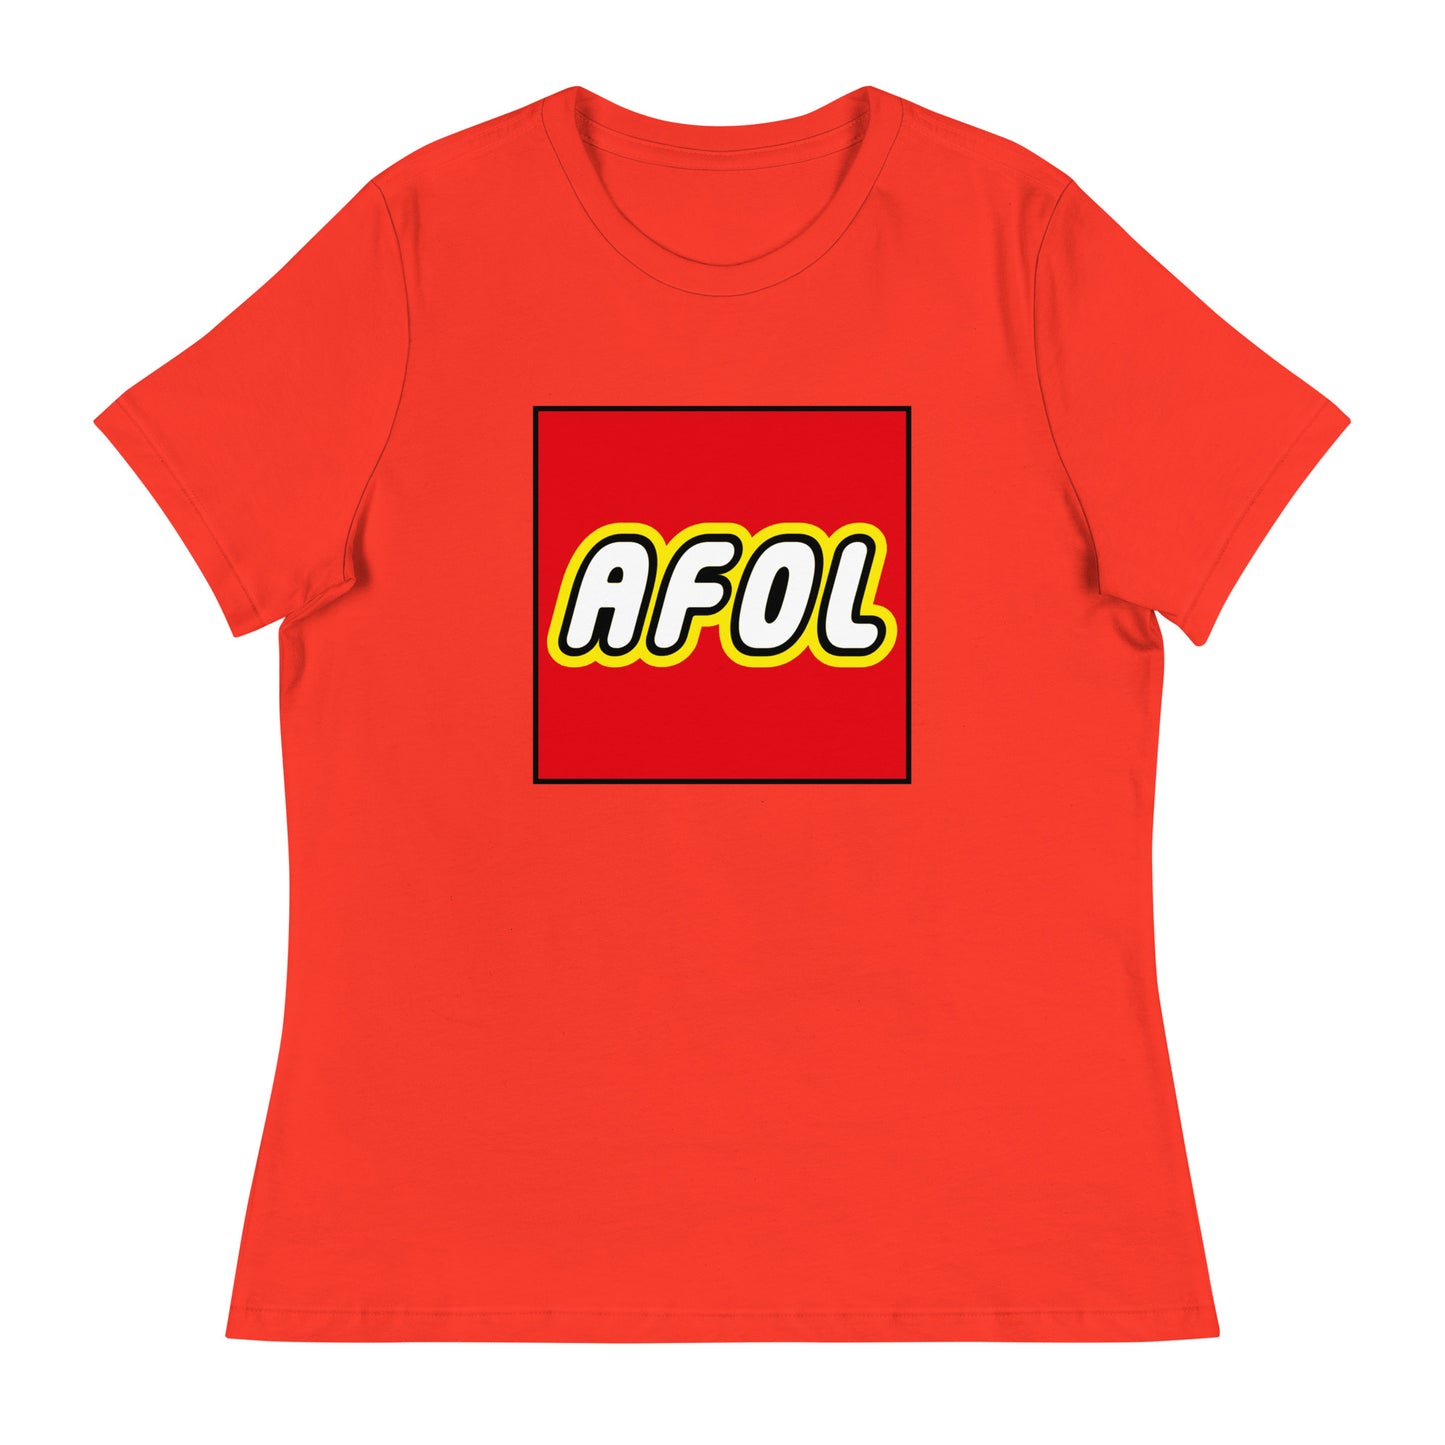 AFOL (Adult Fan of Lego) Women's Graphic Tee